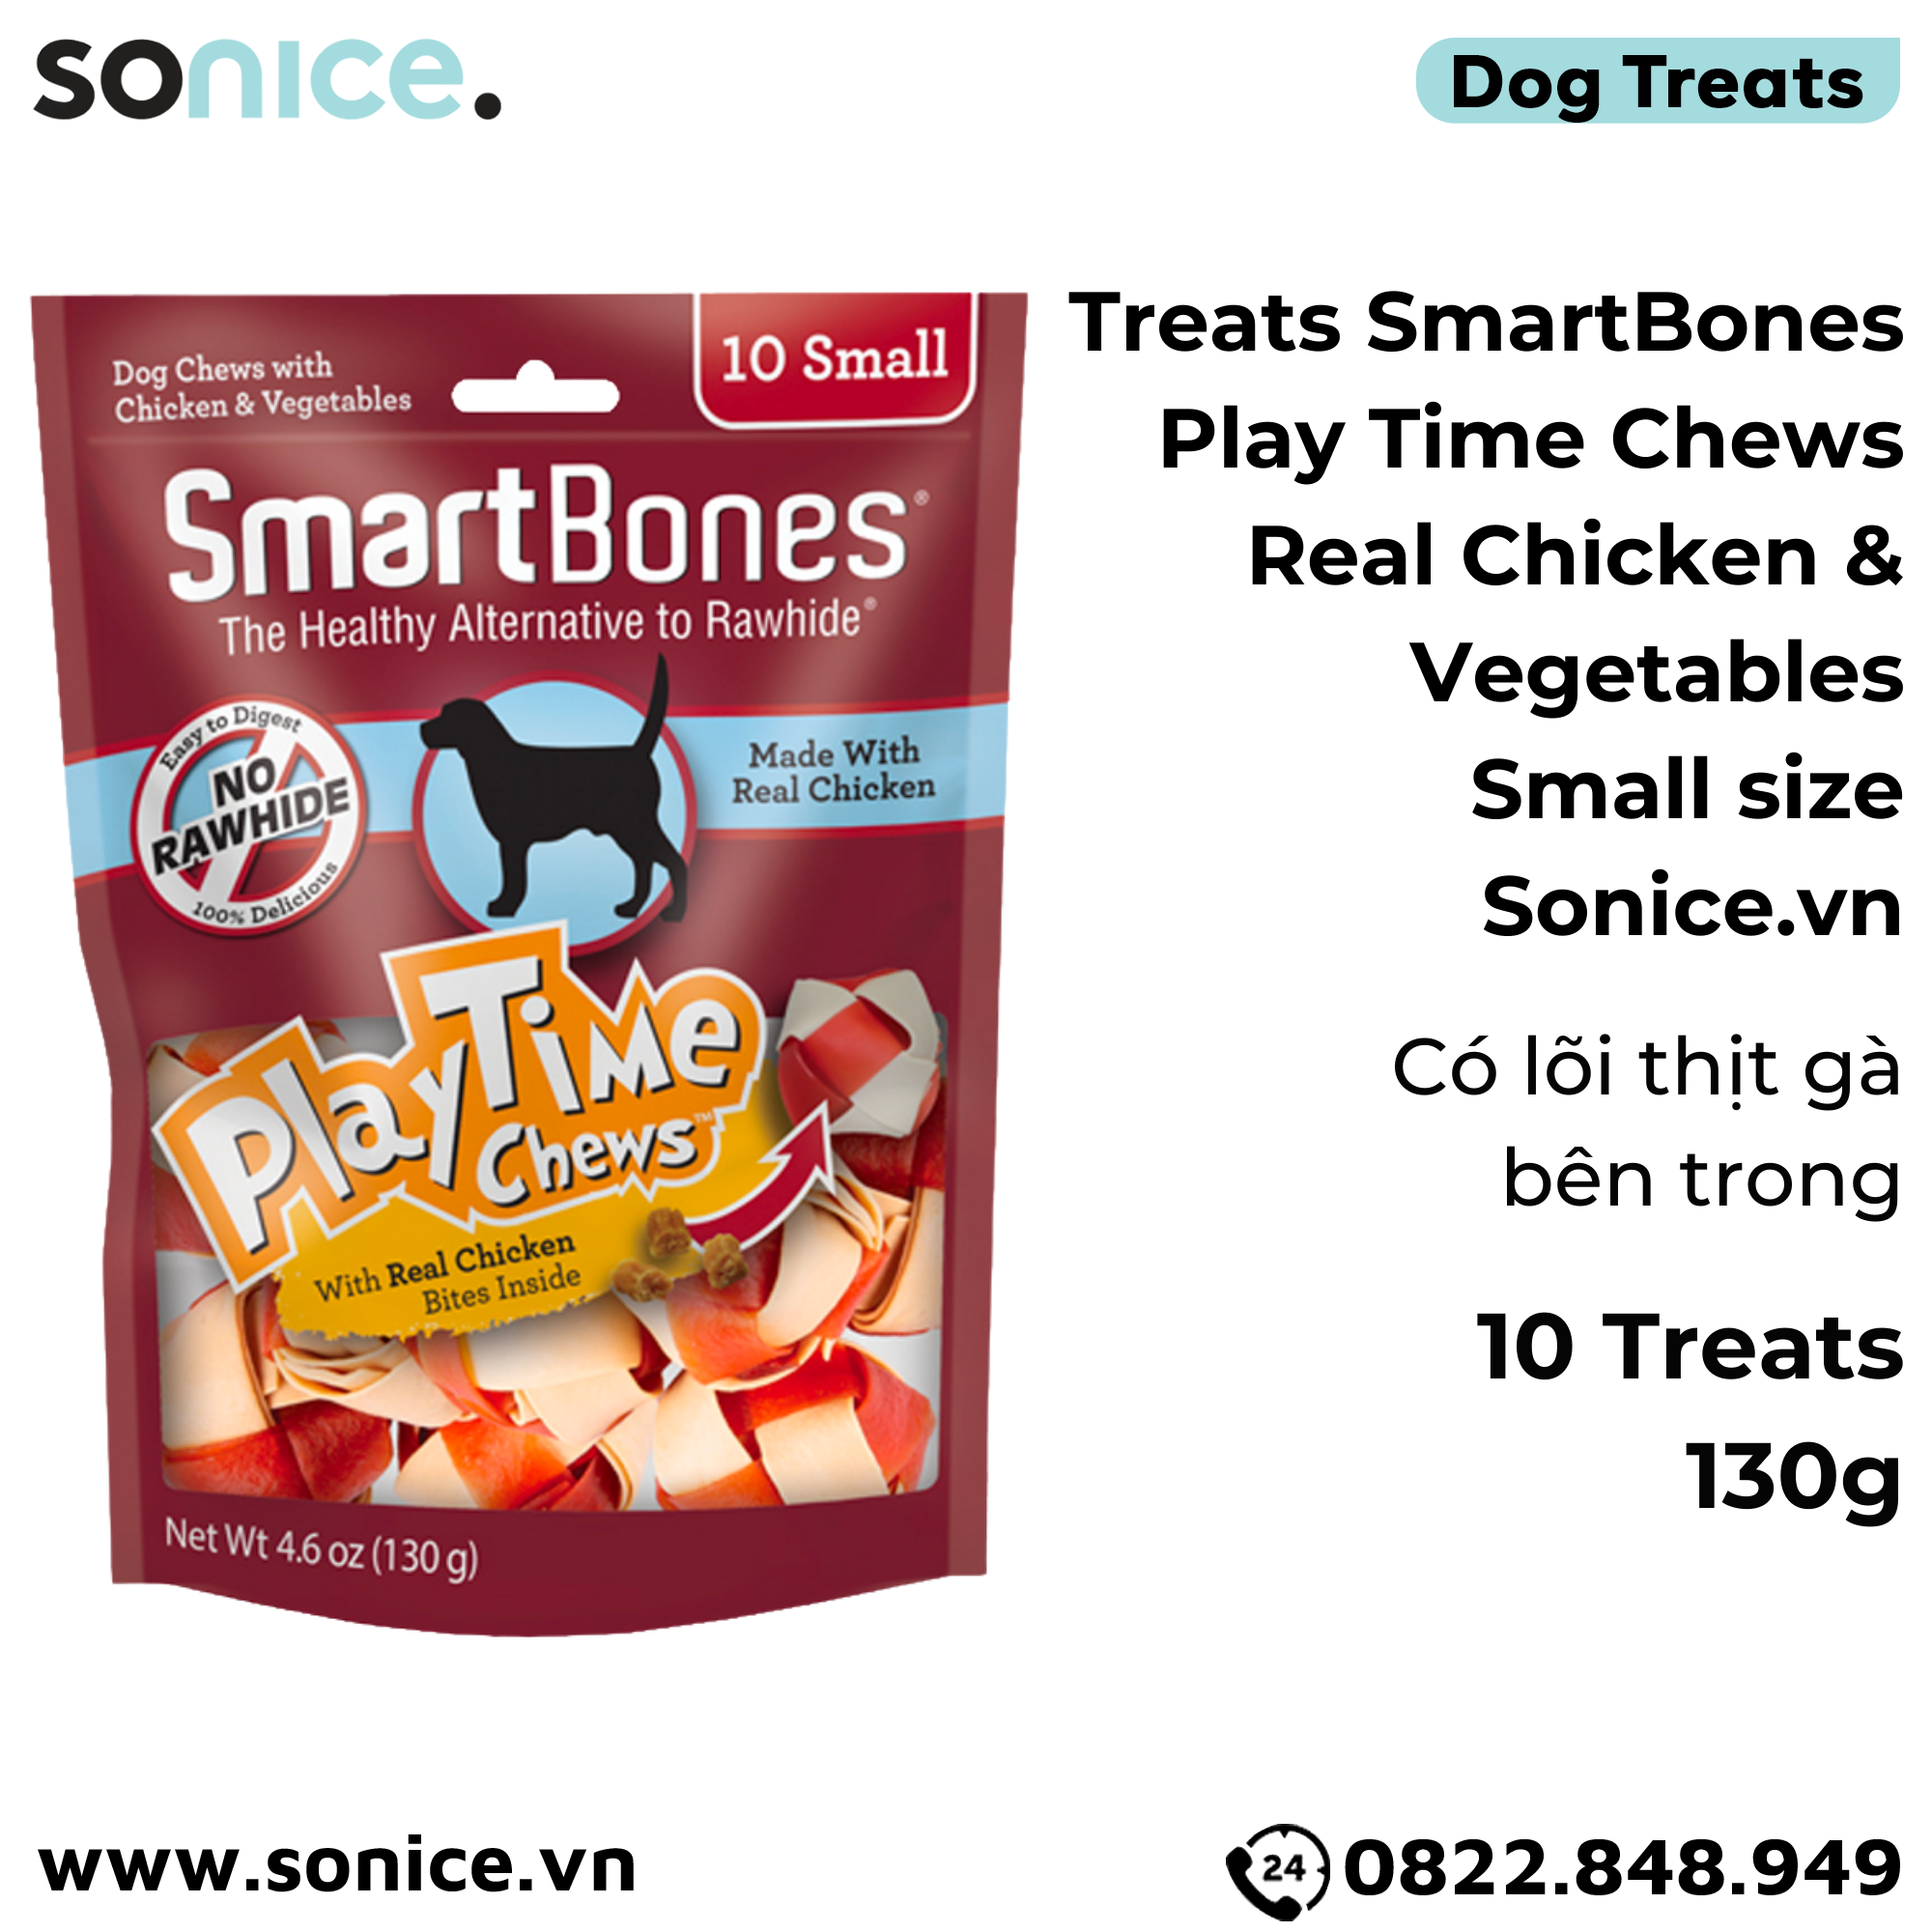  Treats SmartBones Play Time Chews Real Chicken & Vegetables Small size 130g - 10 treats - Có lõi thịt gà bên trong SONICE. 